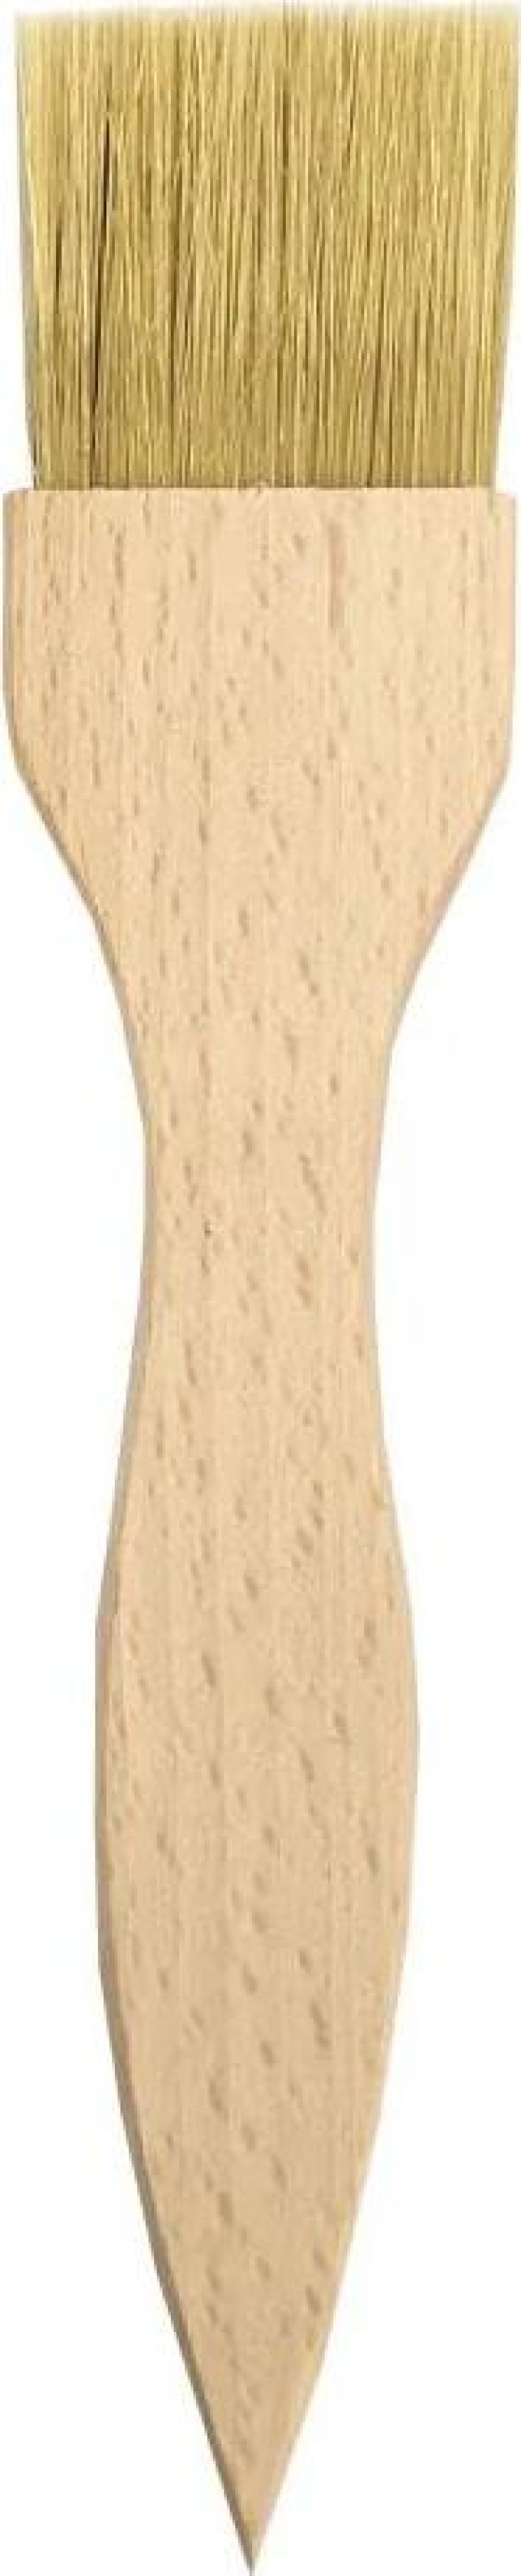 AMADEA Dřevěná mašlovačka s plochou rukojetí, masivní dřevo, délka 19,5 cm